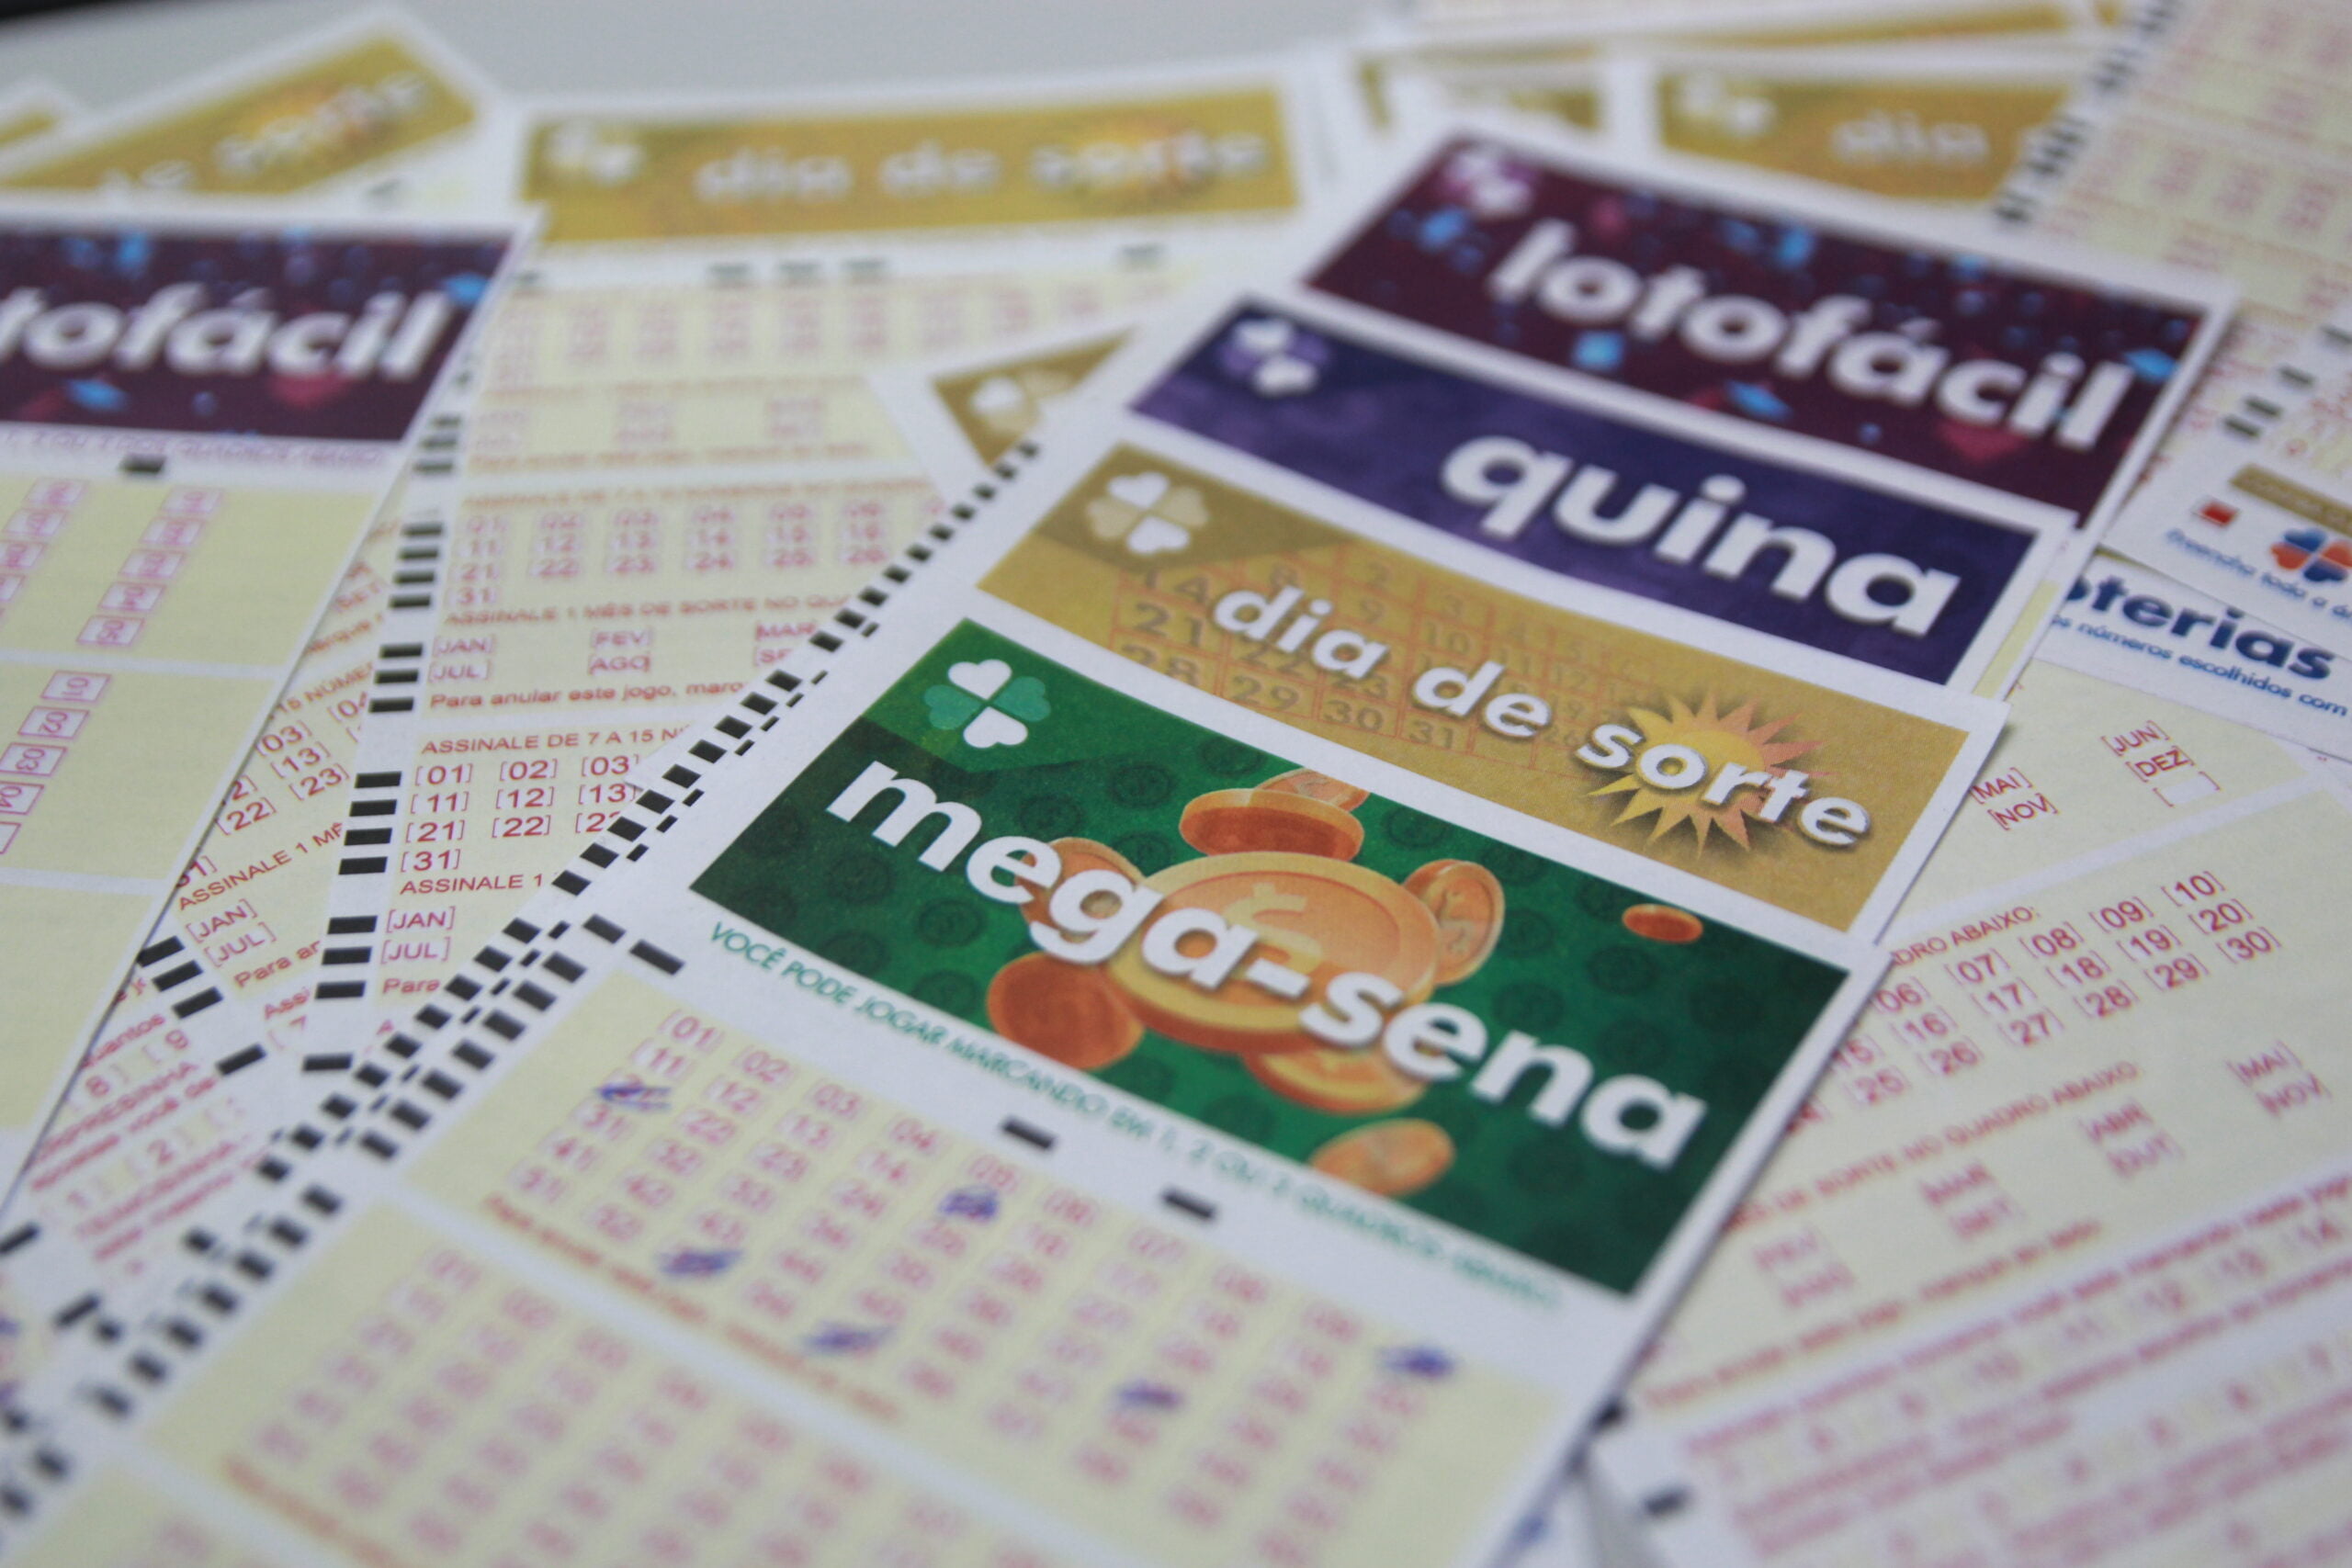 Loterias: resultado da Mega-Sena 2454, Fedeal 5639, Lotofácil 2450 e outros sorteios de sábado (16/02)